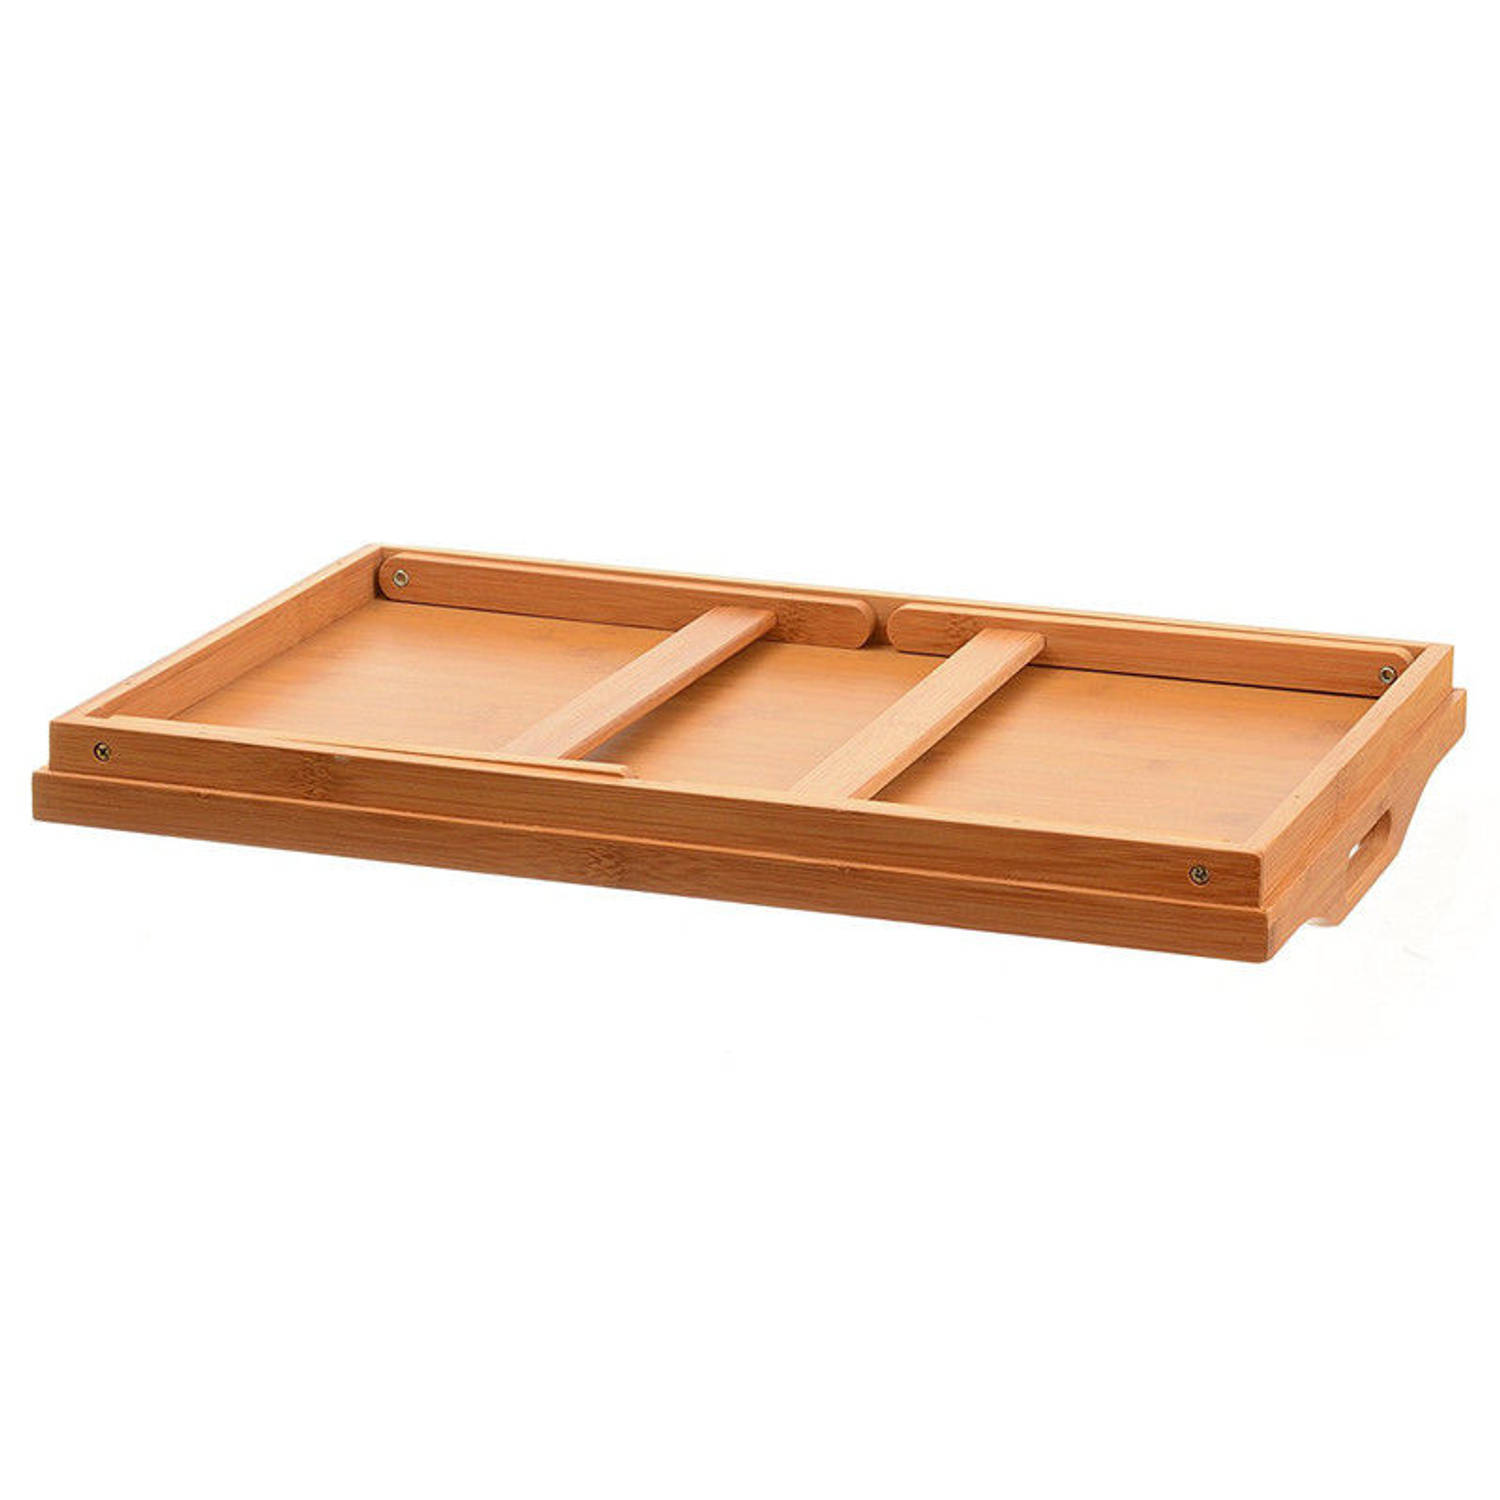 Decopatent Bamboe inklapbare bedtafel voor op bed met dienblad - Houten Bedtafelje - Laptoptafel - Ontbijt Bed - Bank dienblad